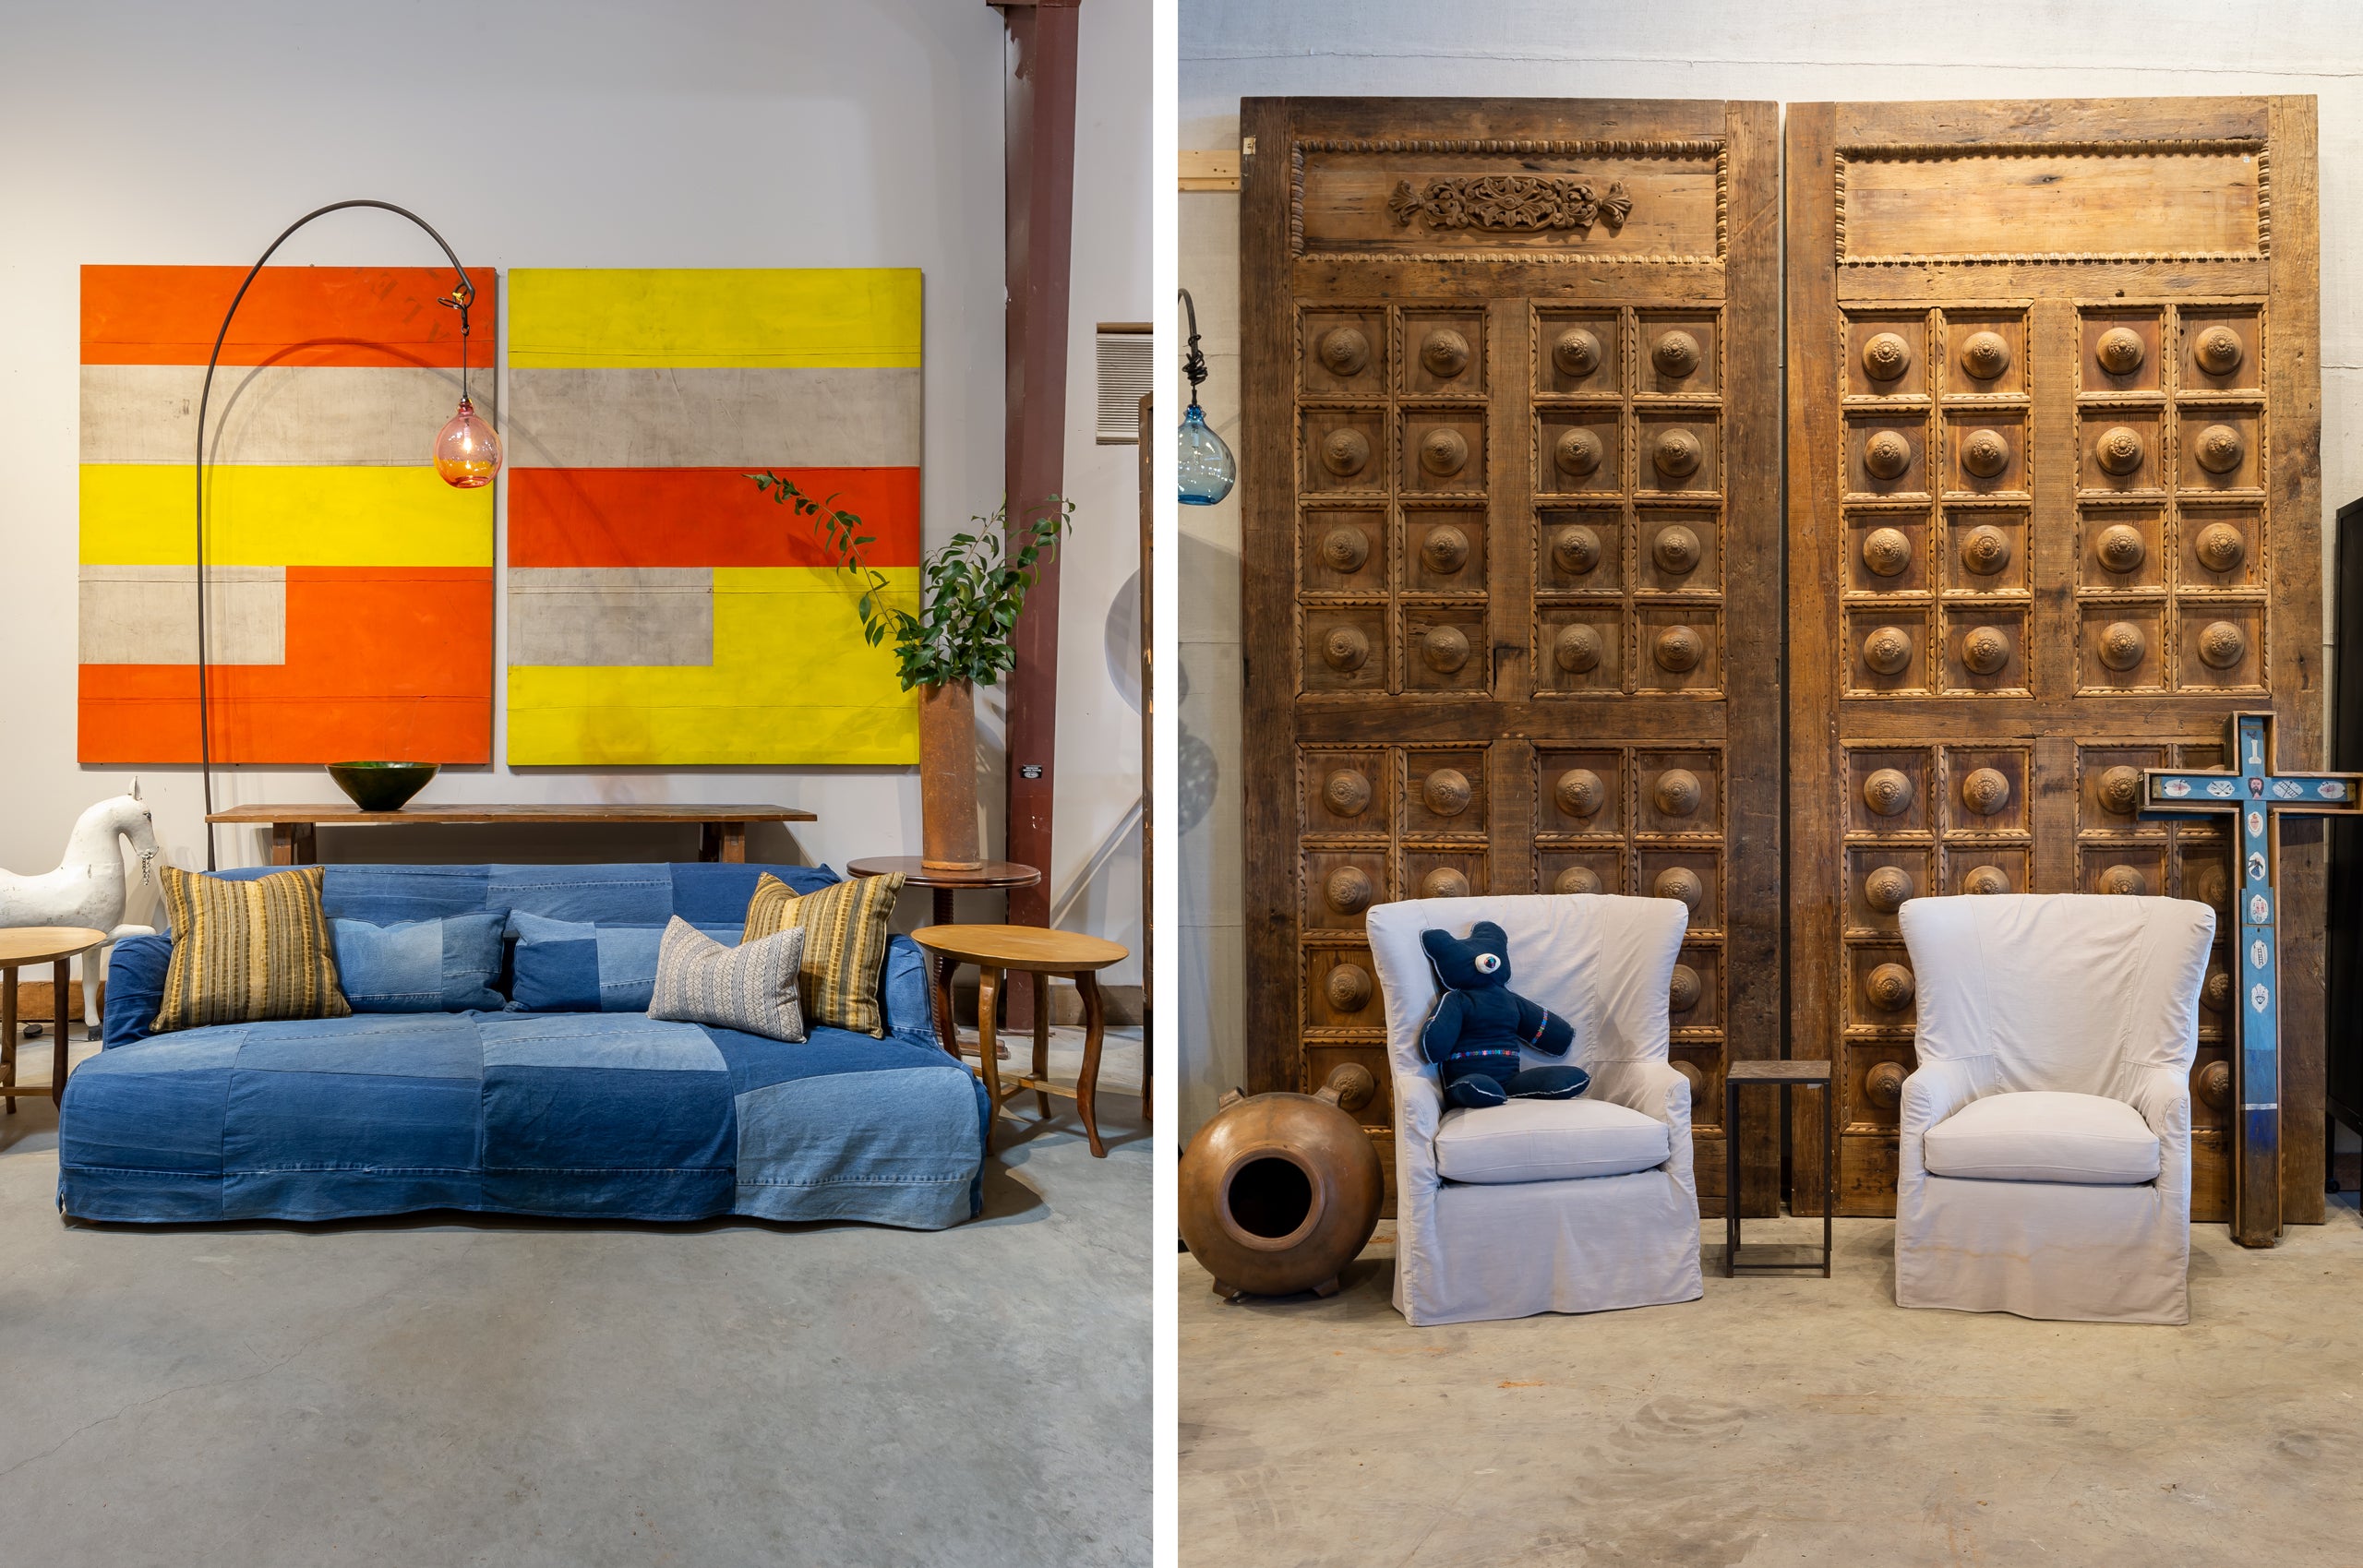 两个并排的垂直图像. 左图是一张demin软垫床. 右图两张白色椅子前面的大型复古木门